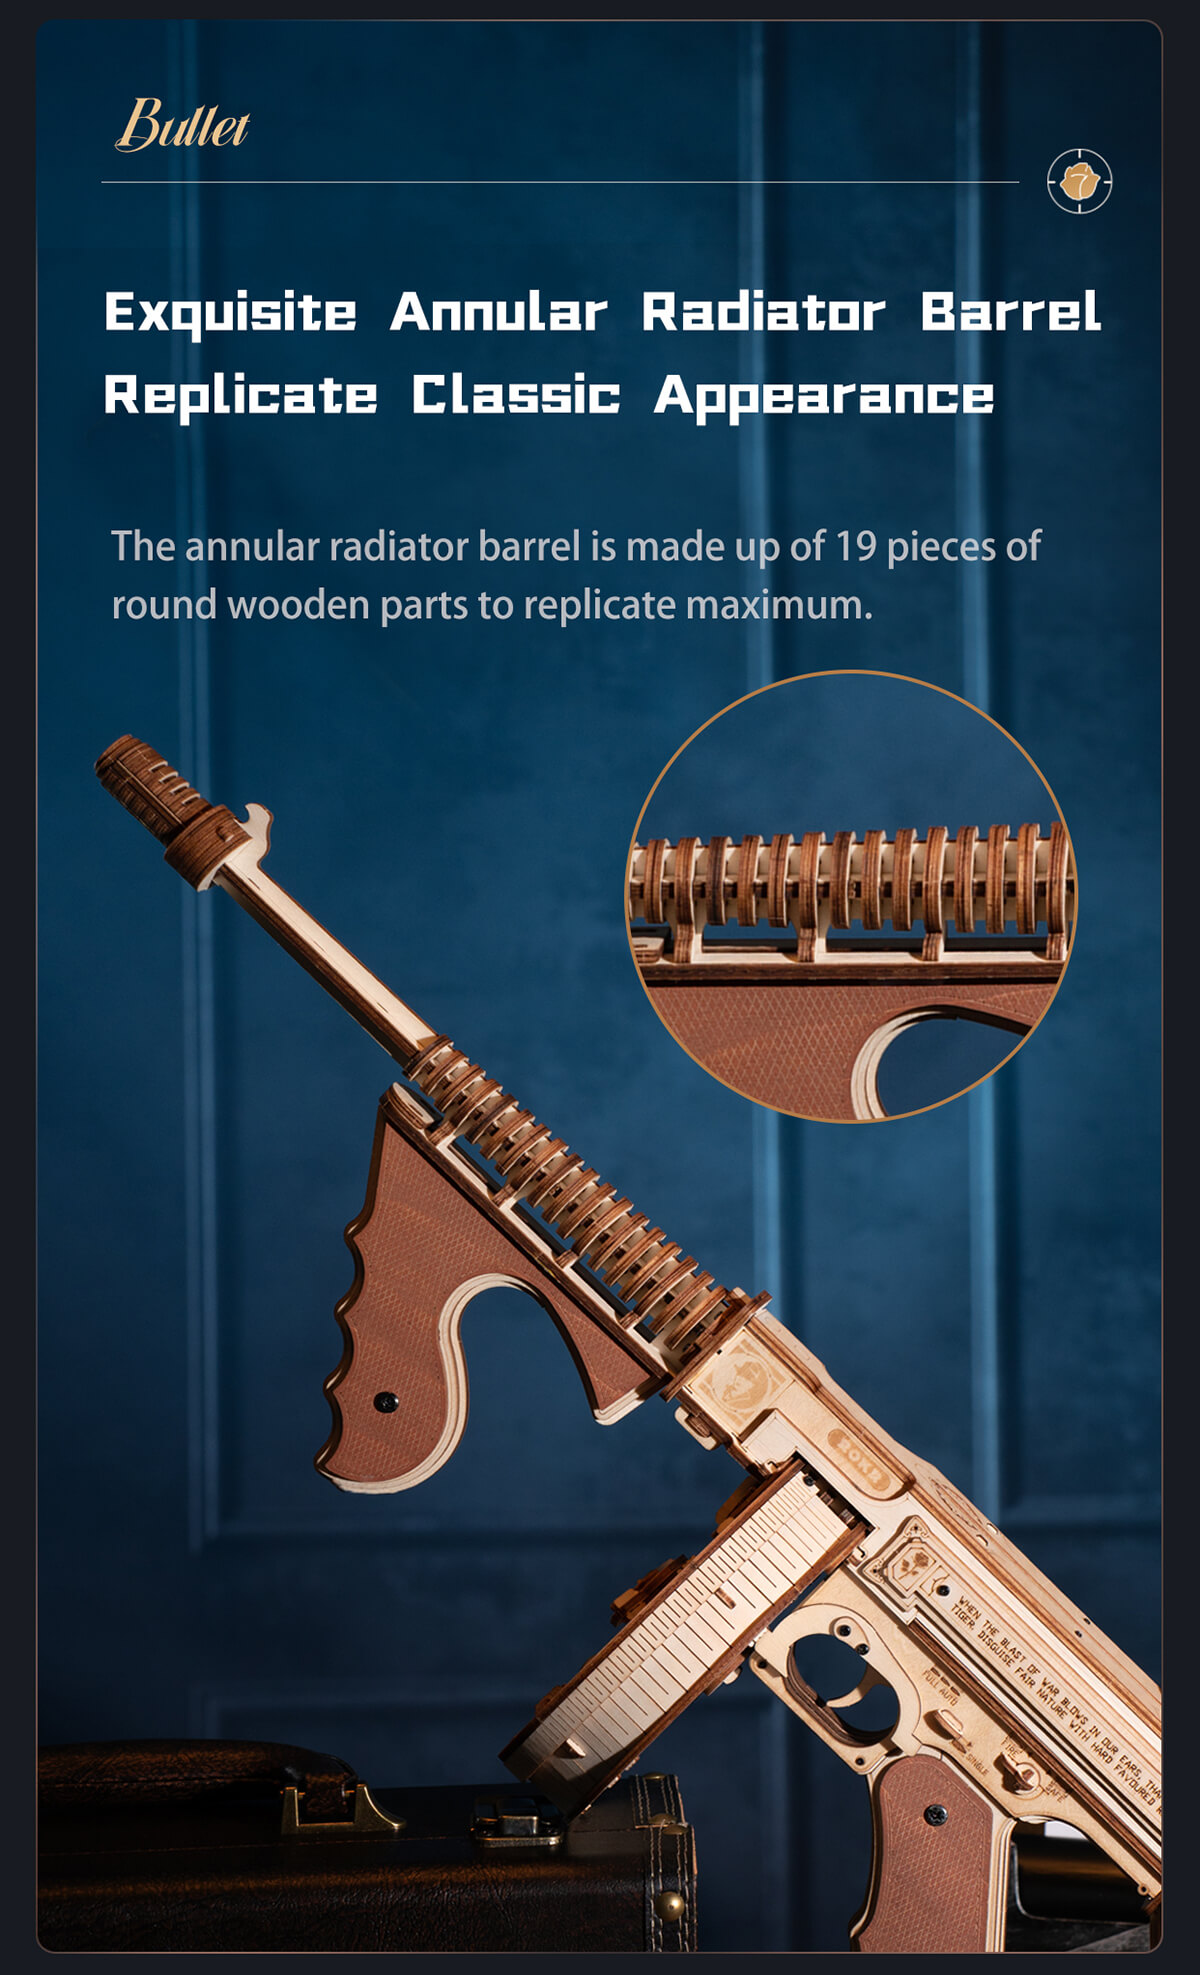 Thompson Submachine Gun Toy 3D ROKR Wooden Puzzle LQB01 15